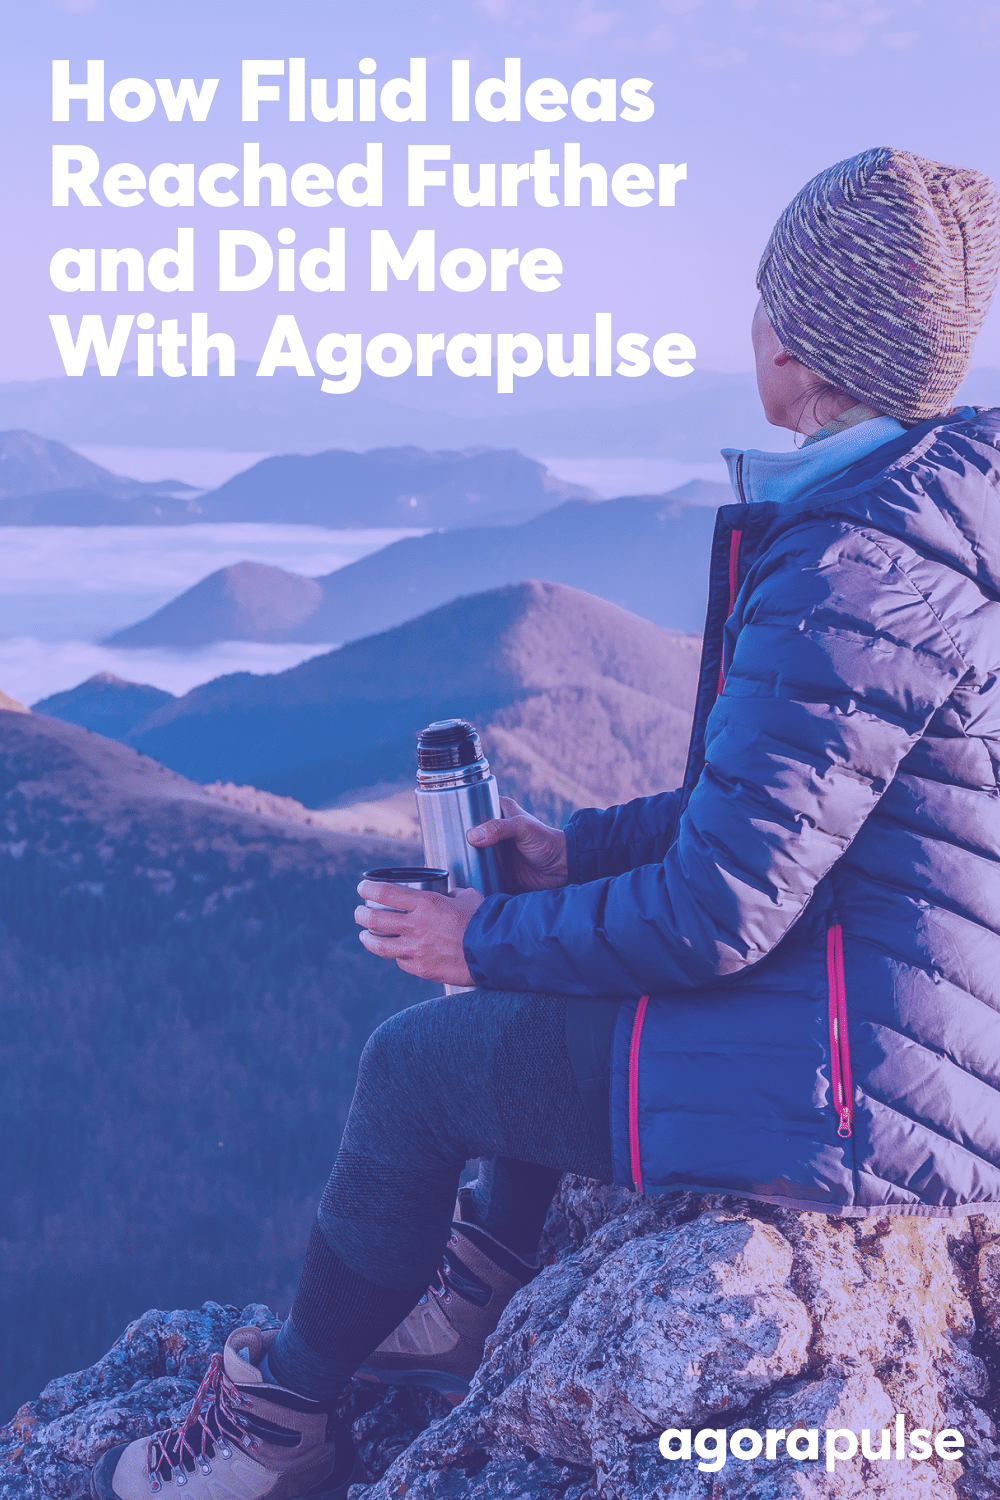 چگونه ایده های سیال با Agorapulse بیشتر رسیدند و کارهای بیشتری انجام دادند